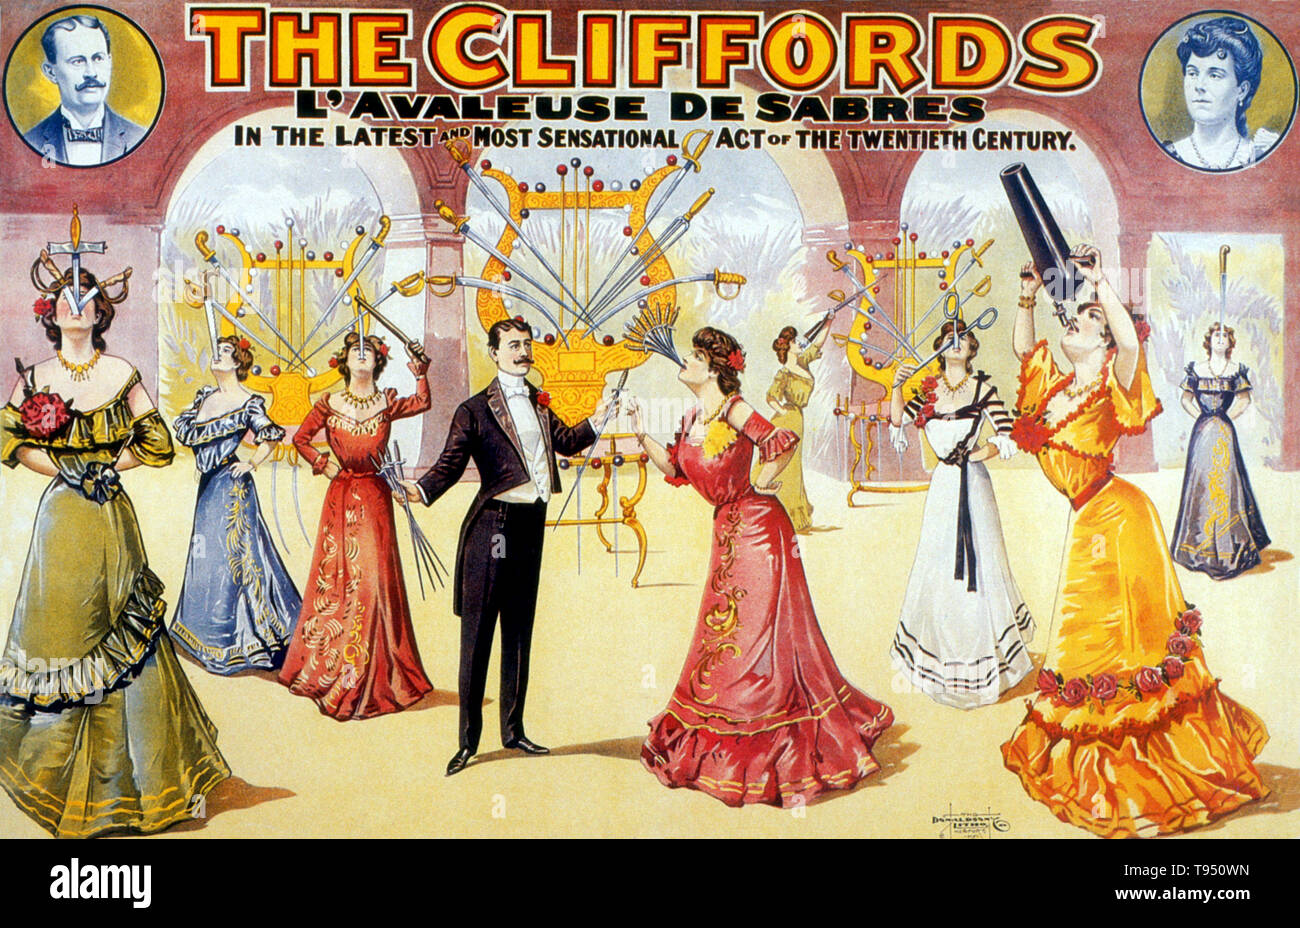 Edith Clifford (1886 - 1942) ha iniziato la sua carriera nel 1899 dopo essere stato trascinato dal veterano uno zampe swallower spada Deln Ritz. Ha debuttato con uno dei fratelli Ringling' touring mostra all'età di 13. La sua legge che cambiano e si evolvono nel corso degli anni, ma alla fine è venuto per includere la deglutizione rasoi, forbici, baionette, lame incurvate, e fino a 13 spade alla volta, con lame fino a 26 cm di lunghezza. Foto Stock